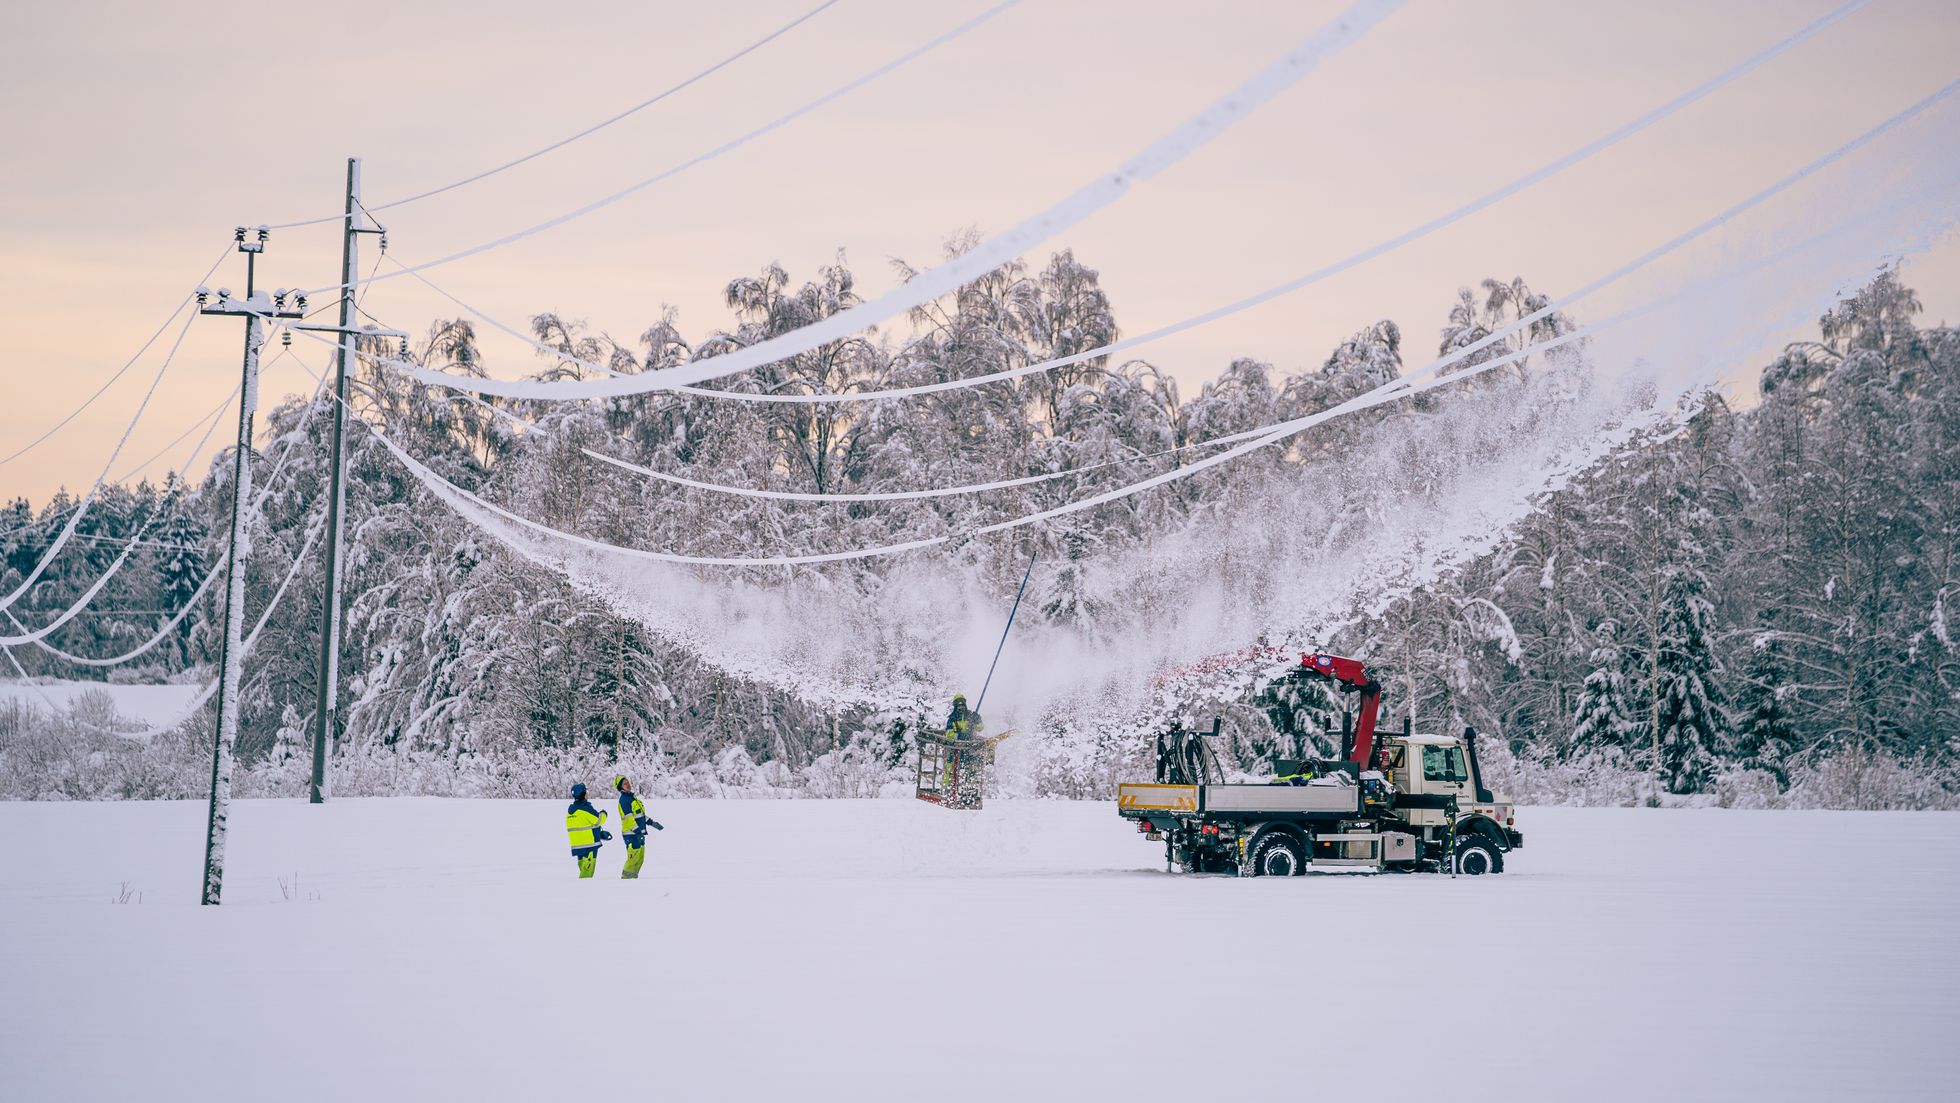 Elektriliinidelt lume eemaldamine Palamulla külas Raplamaal. Novembris maha sadanud paks ja raske lumi on tekitanud olukorra, kus peamiselt tuleb tegeleda lumest tekkinud probleemide kõrvaldamisega. Lumetormi tagajärjel on elektriliinidele kogunenud lumi.